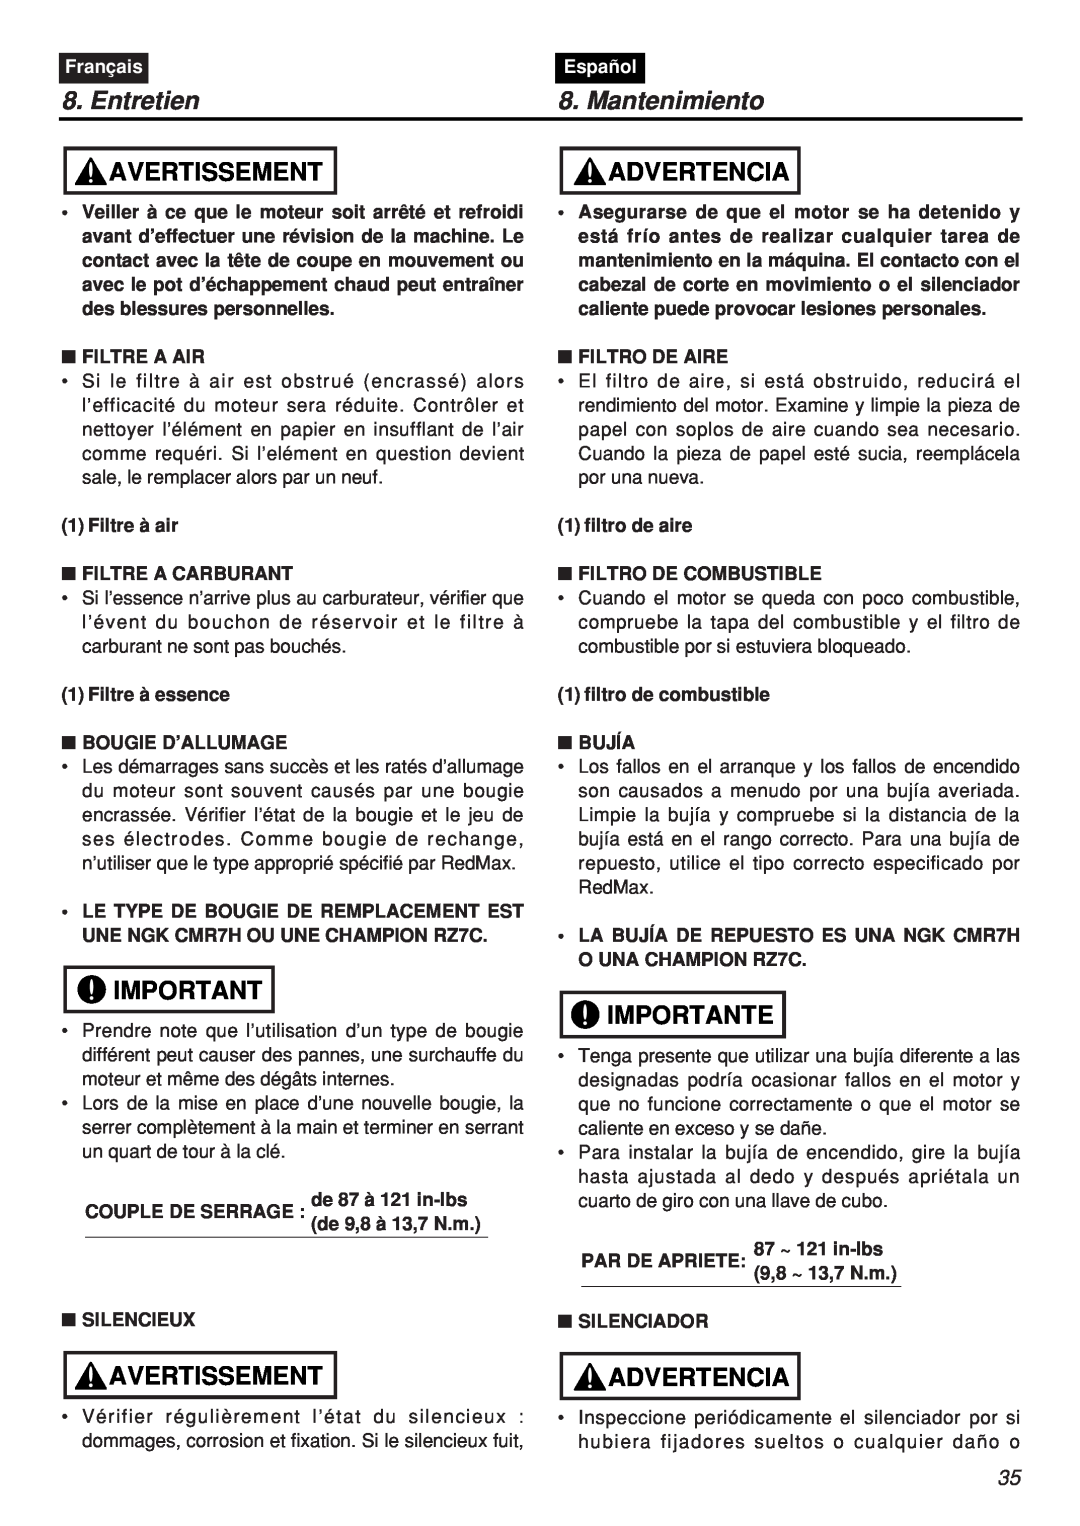 Zenoah CHTZ2401-CA, HTZ2401L-CA manual Entretien, Mantenimiento, Avertissement, Advertencia, Importante, Français, Español 